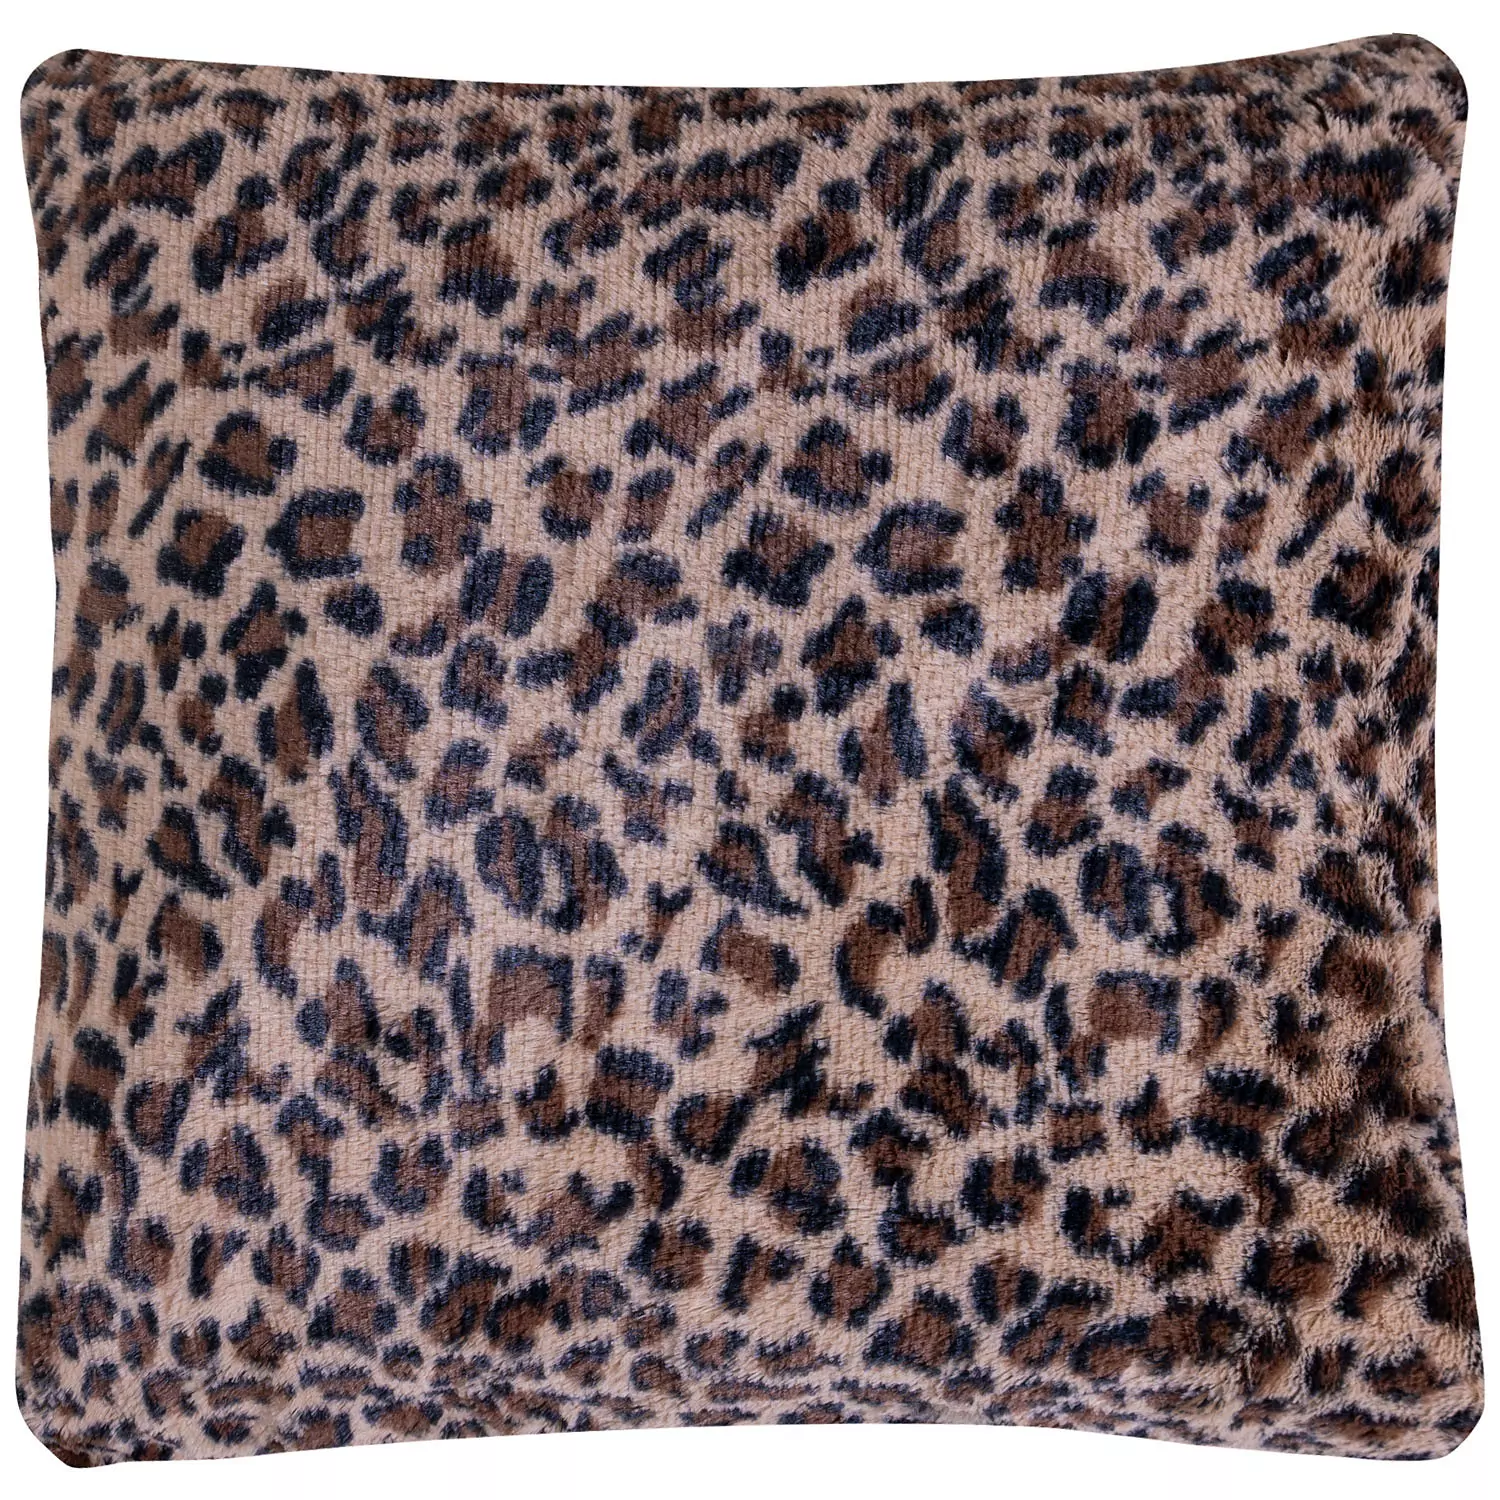 Soft plush cheetah print decorative cushion, 18"x18", brown